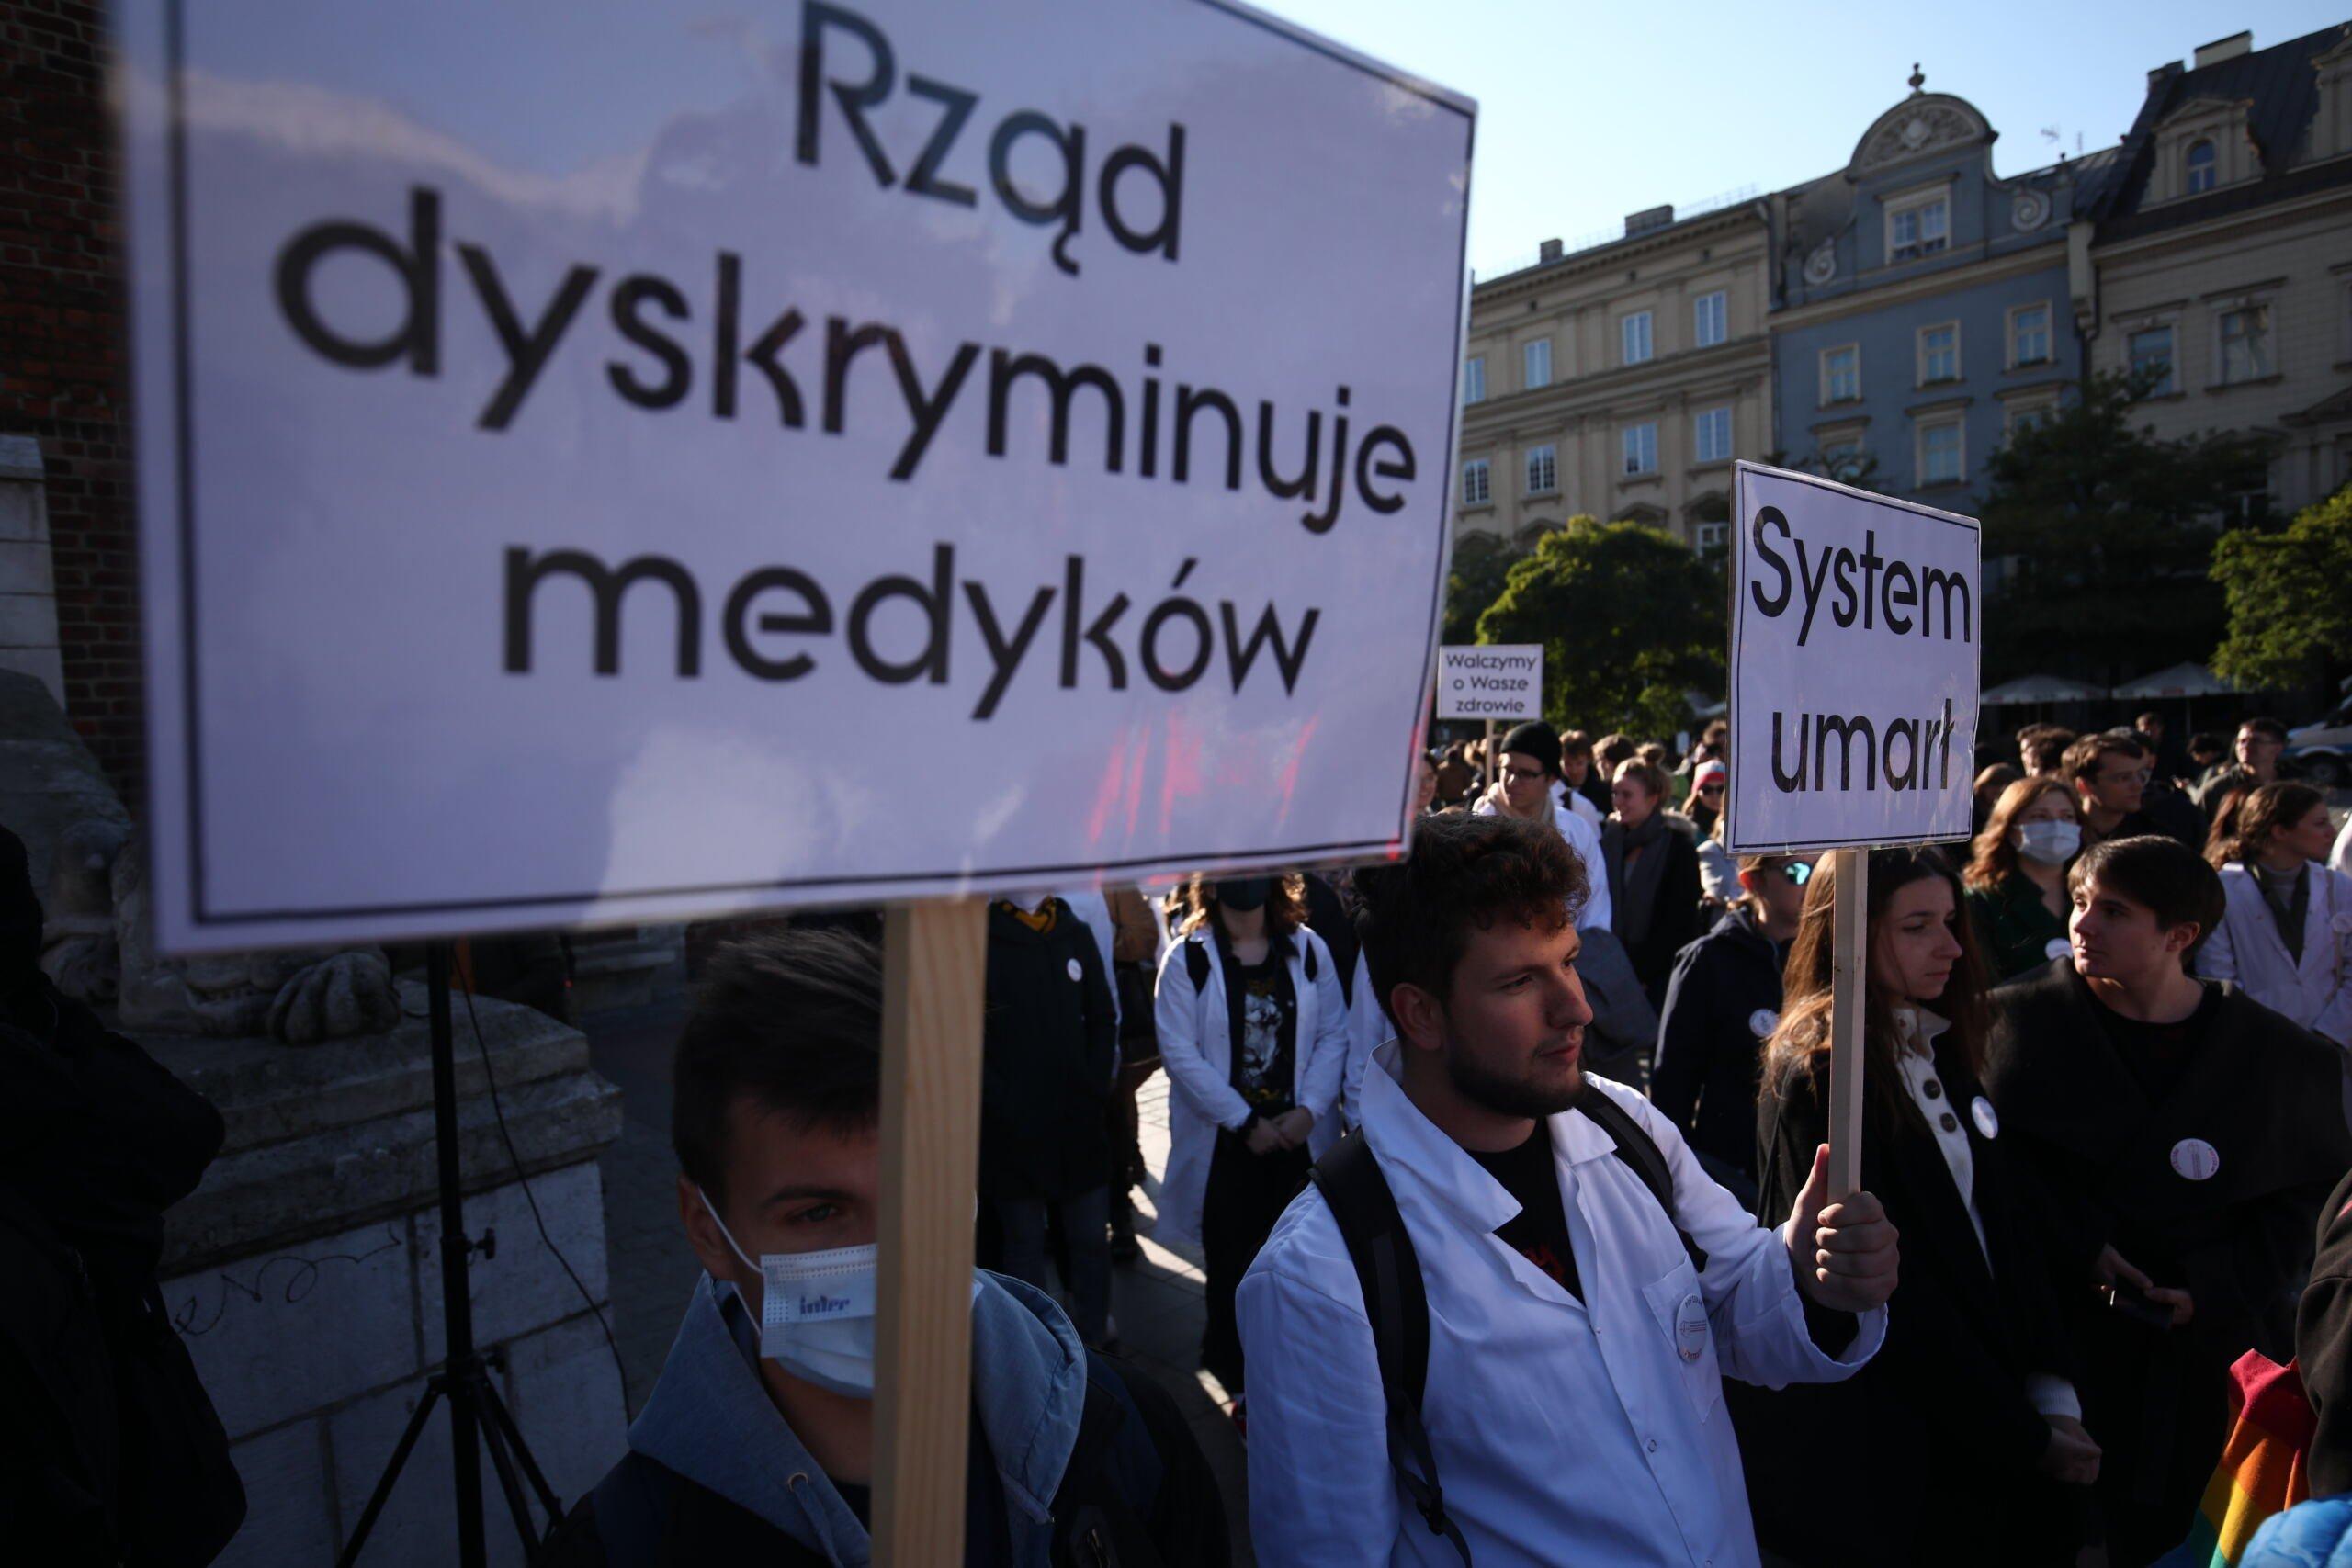 Transparent "Rząd dyskryminuje medyków" Protest zawodów medycznych